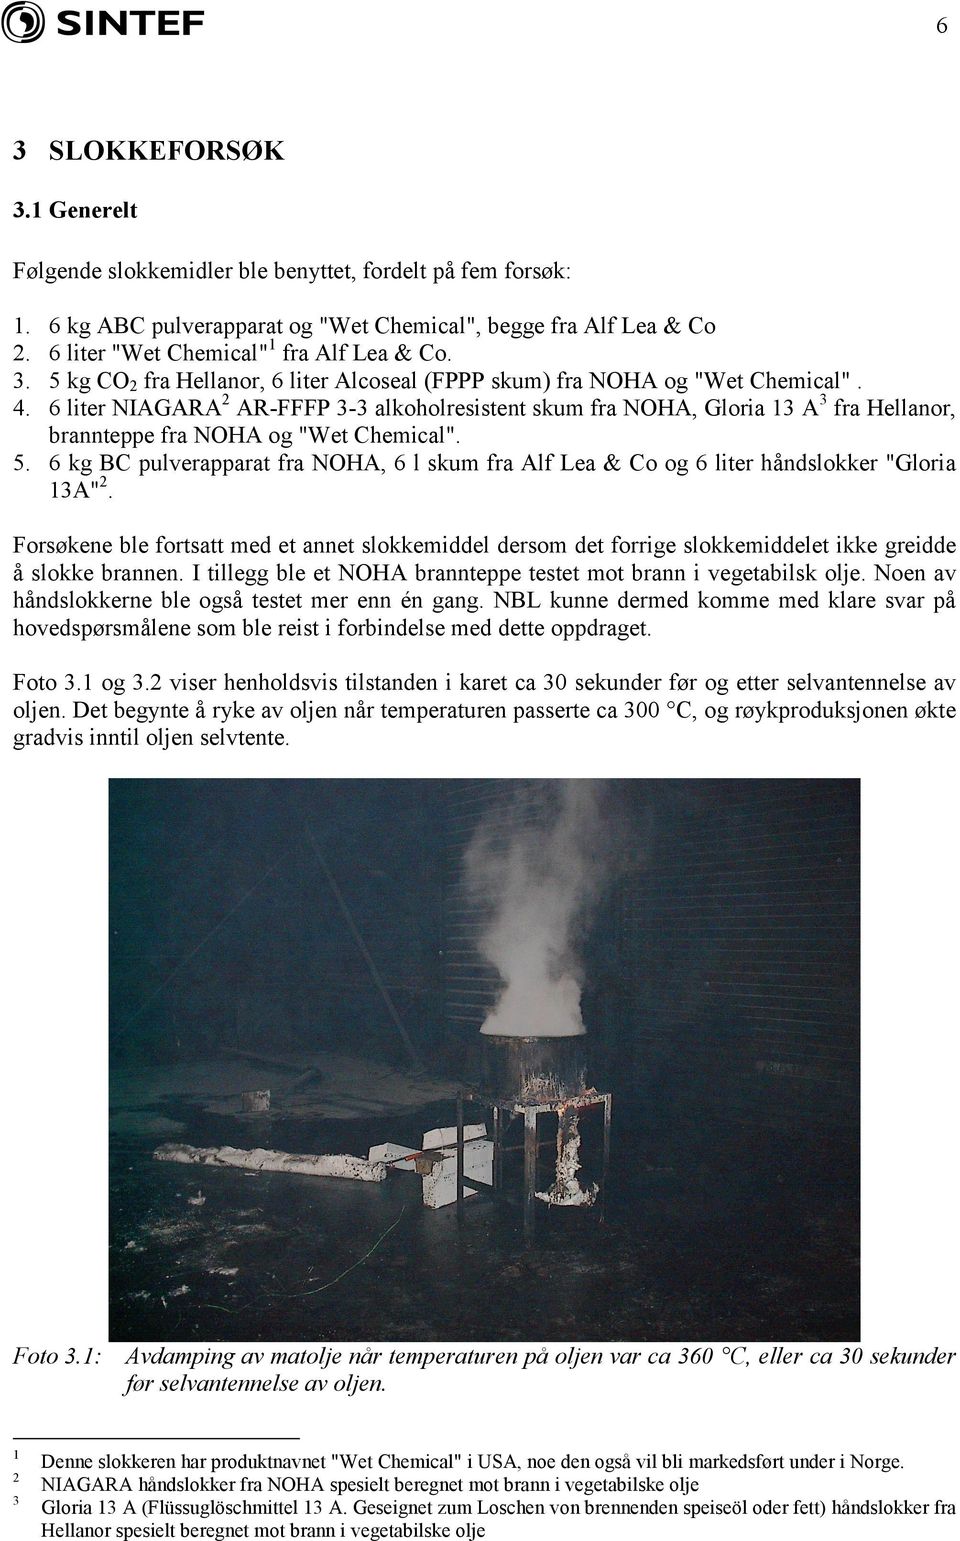 6 liter NIAARA 2 AR-FFFP 3-3 alkoholresistent skum fra NOHA, loria 13 A 3 fra Hellanor, brannteppe fra NOHA og "Wet Chemical". 5.